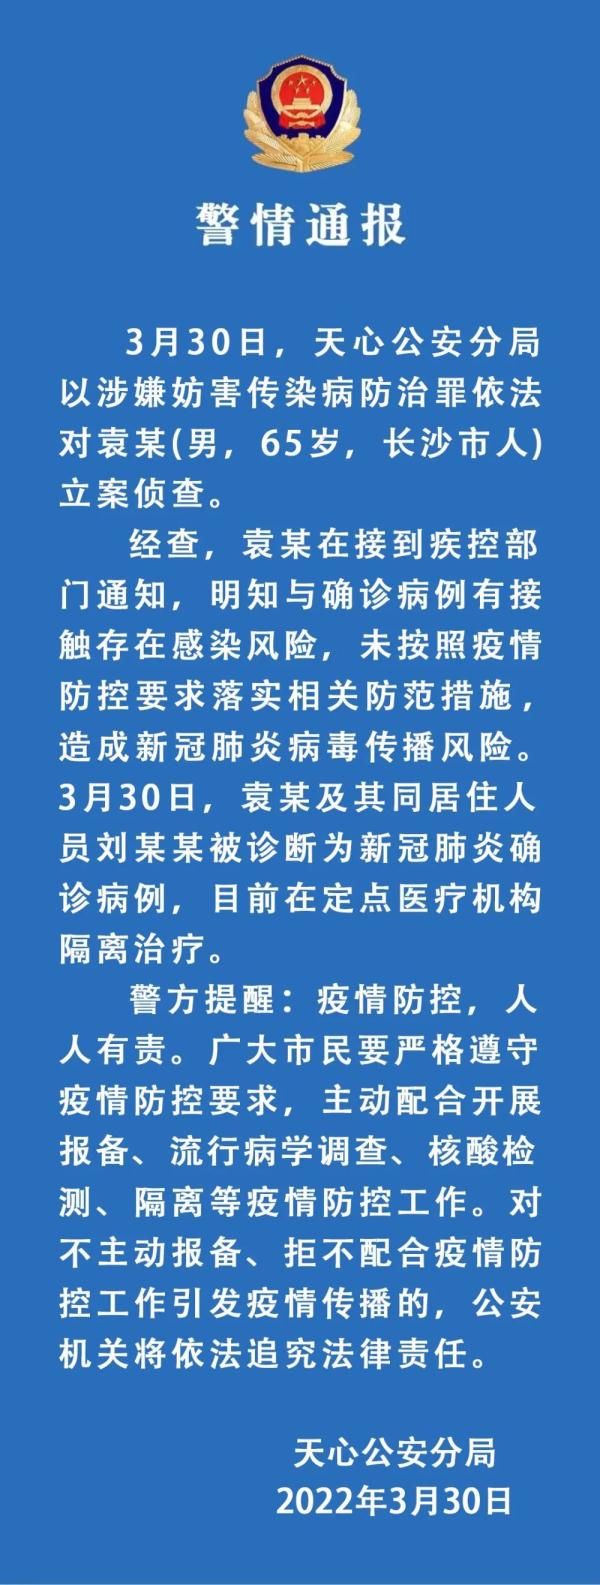 湖南长沙一男子涉嫌妨害传染病防治罪被立案侦查